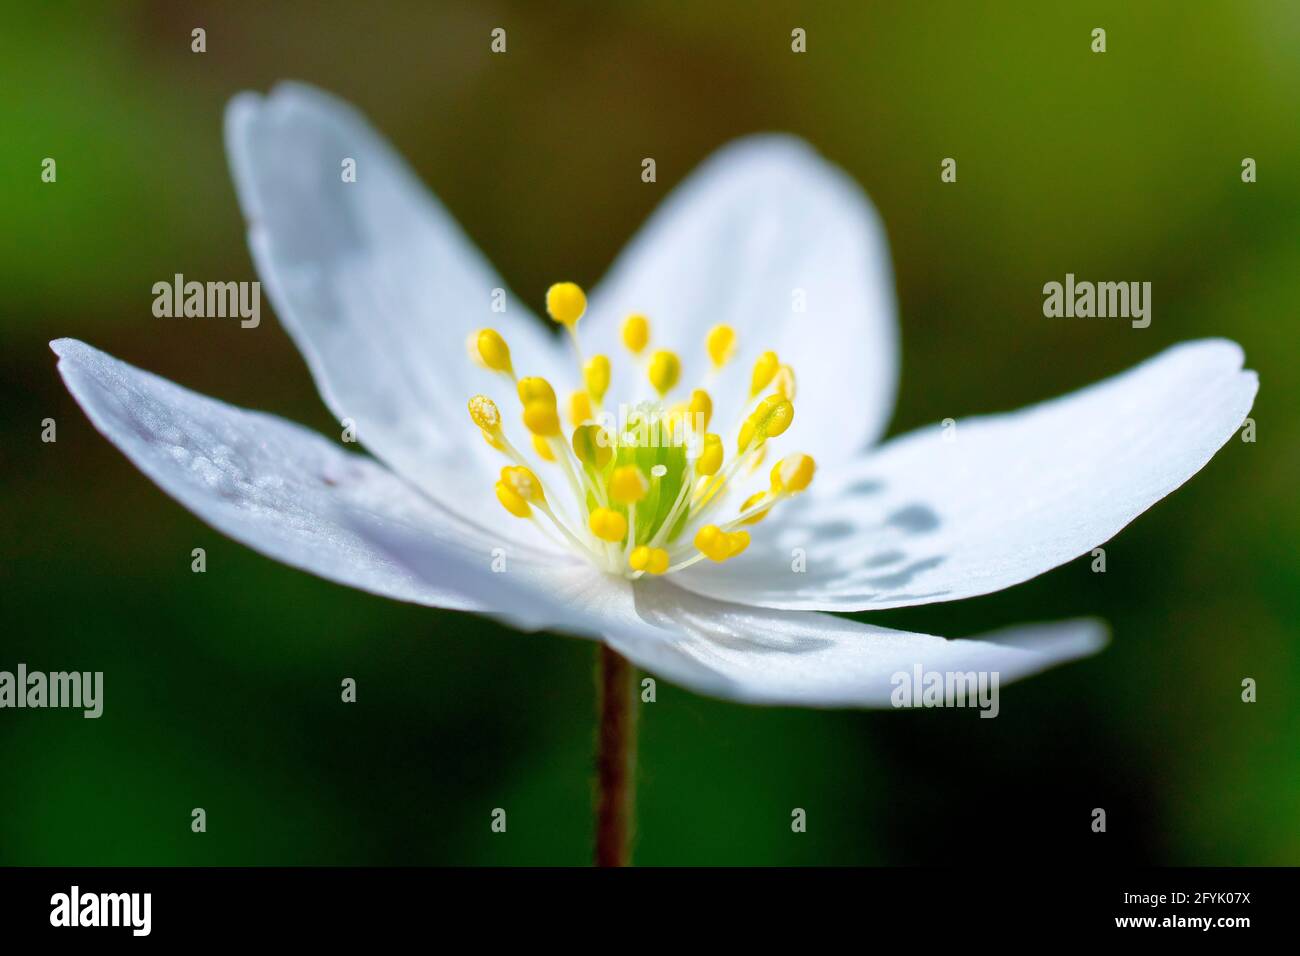 Anemone de bois (anemone nemorosa), également connu sous le nom de Windflower, gros plan d'une fleur simple avec une faible profondeur de champ. Banque D'Images